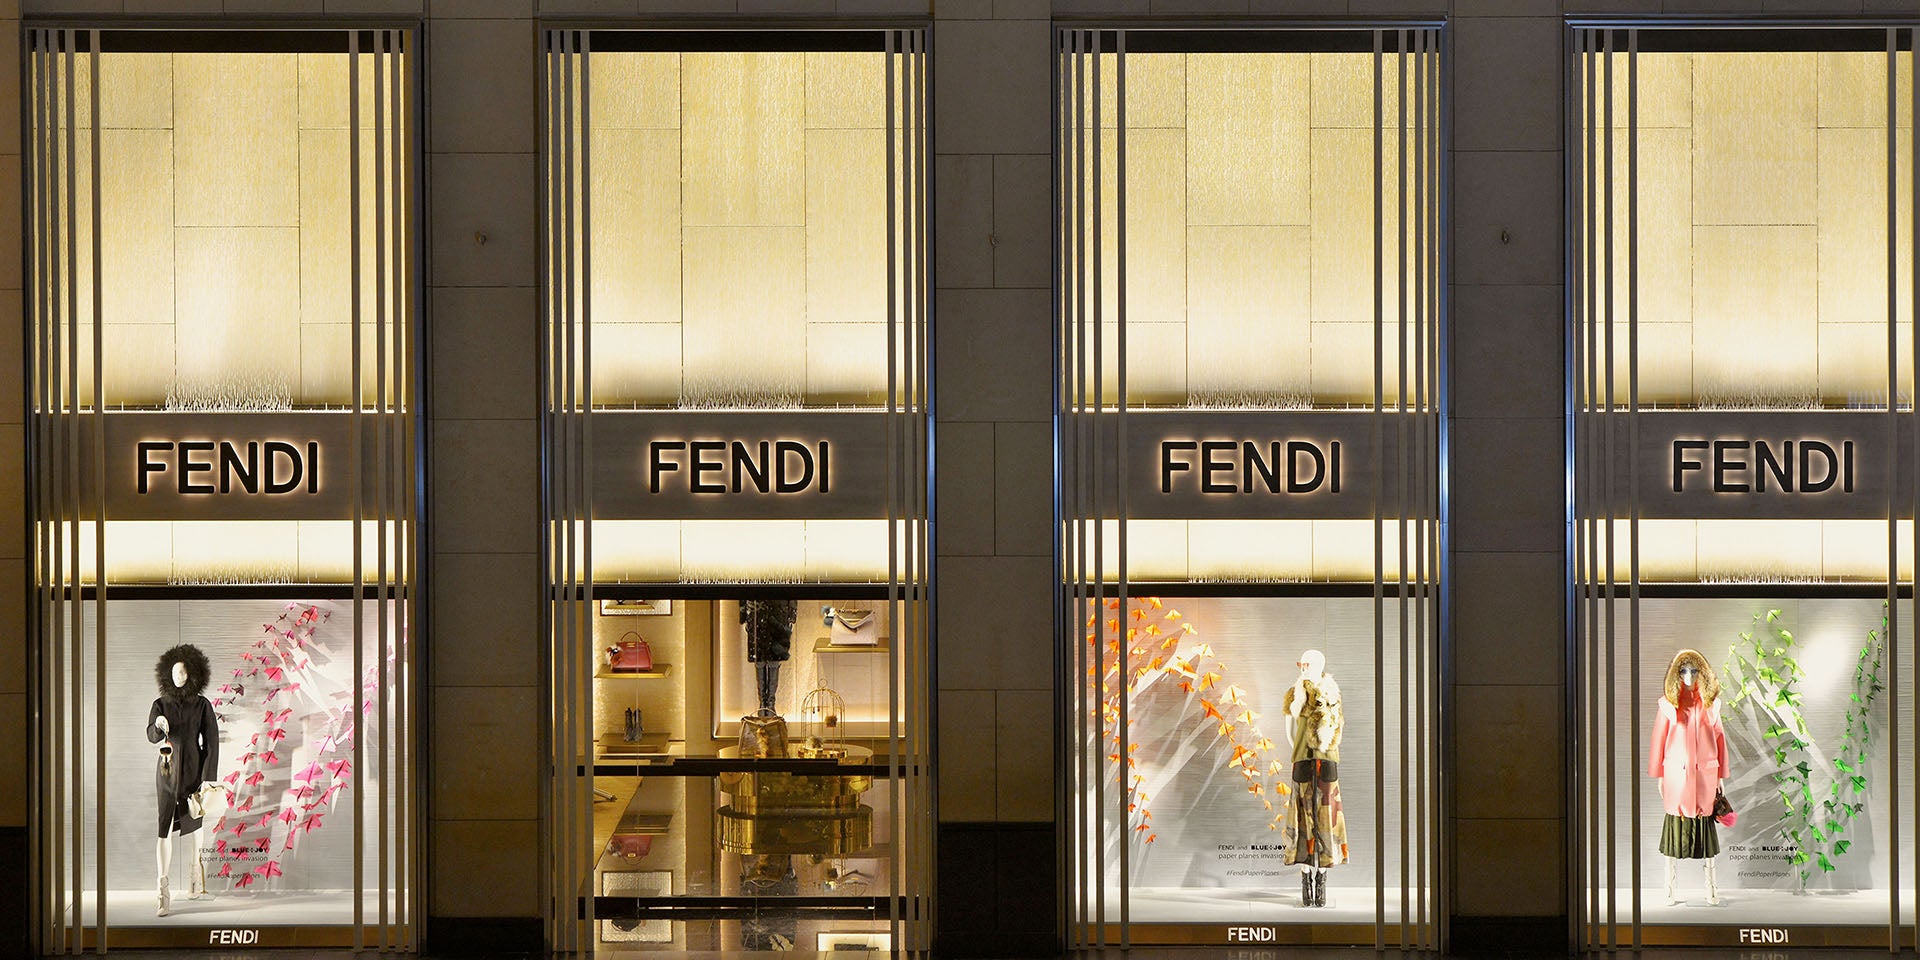 Fendi Storefront - Hong Kong, China.